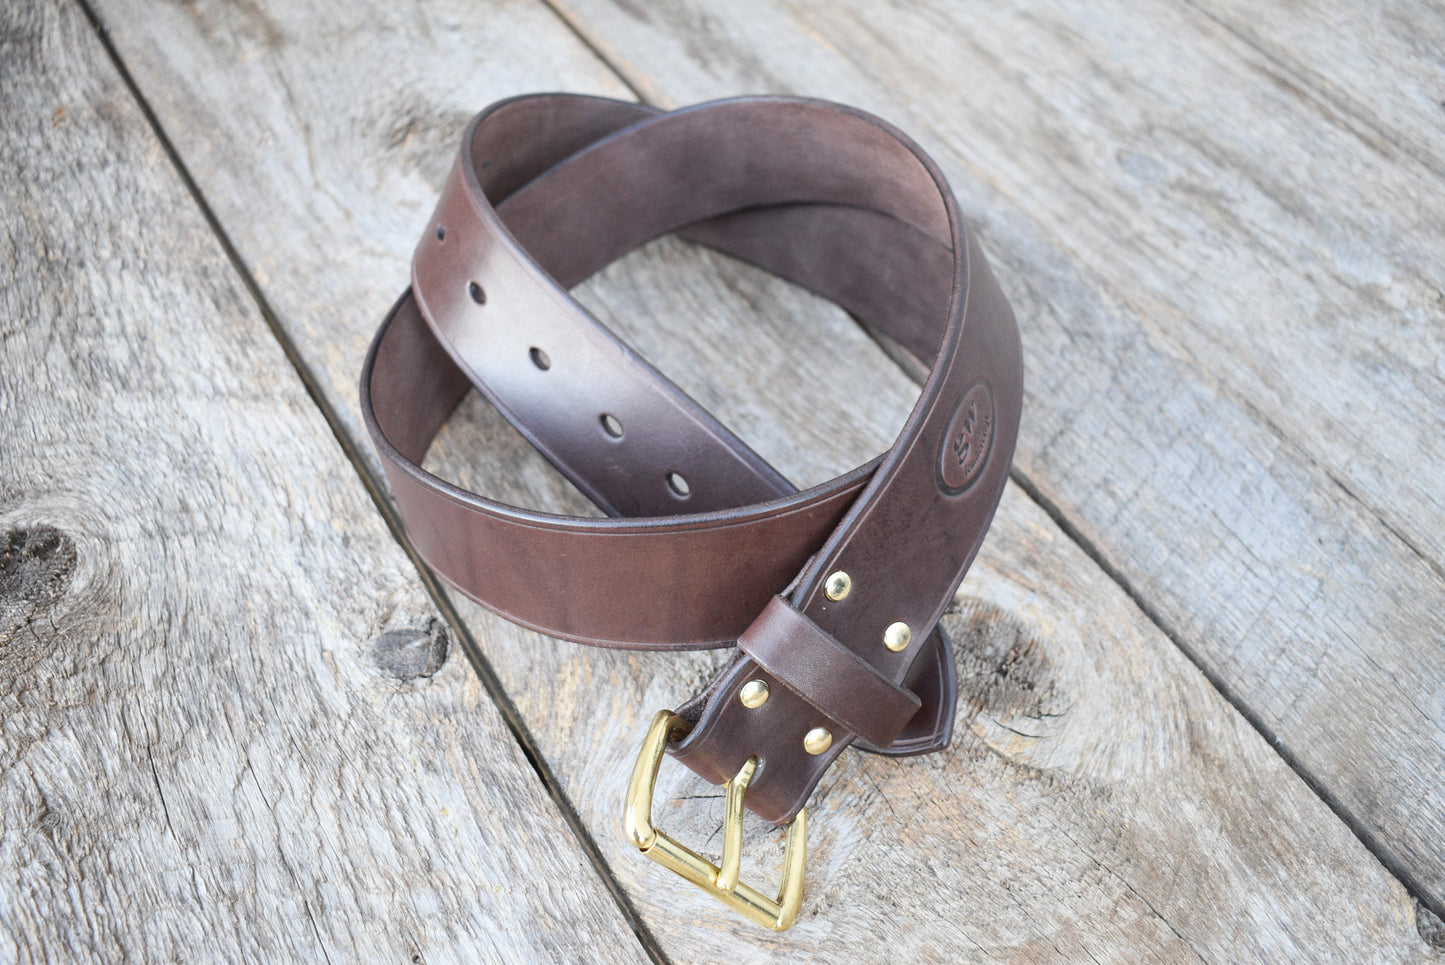 Leather Utility Belt, Bushcraft Gear Belt, Archery Belt, 2 inch wide Leather Belt